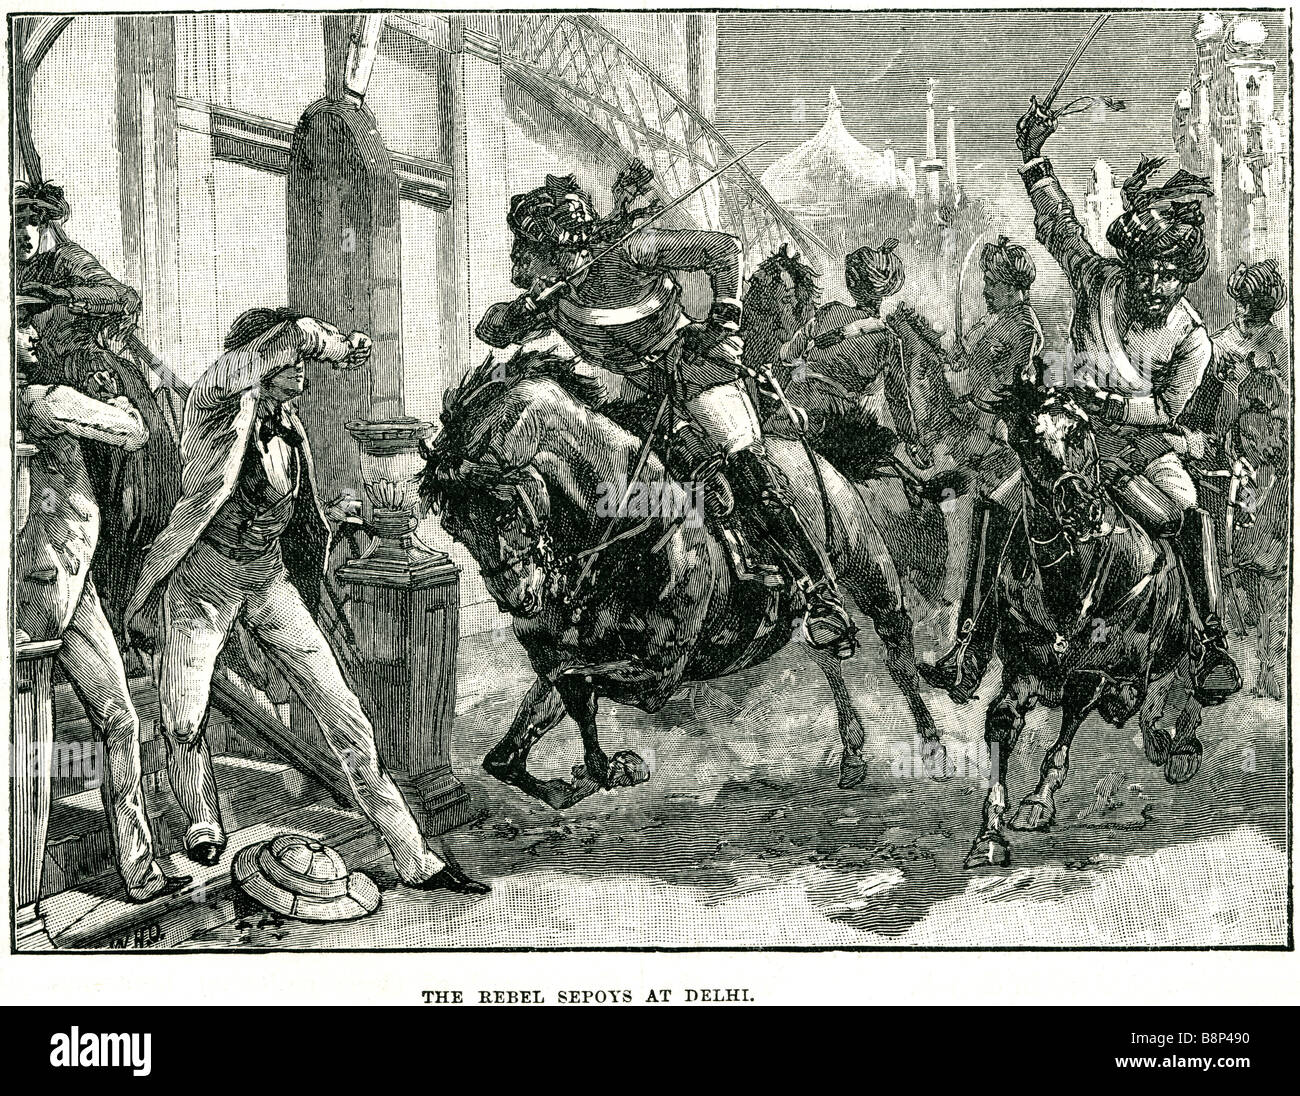 Les cipayes rebelles Rébellion indienne de Delhi de 1857 Meerut Bahadur Shah Zafar Banque D'Images